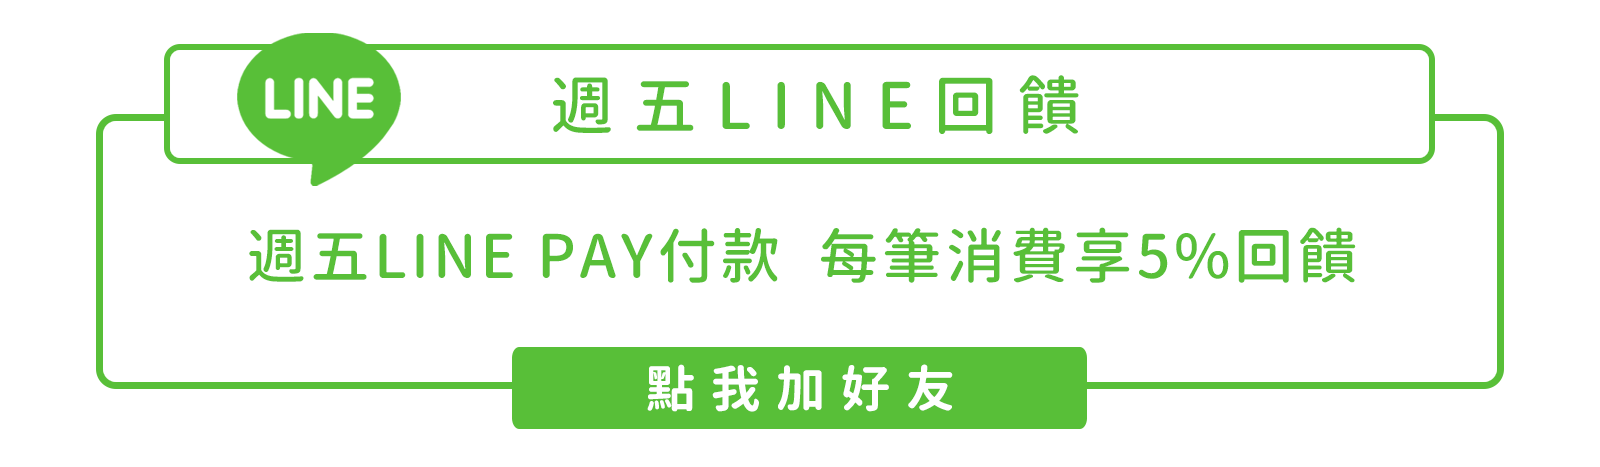 週五LINE回饋 週五LINE Pay付款  每筆消費享5%回饋